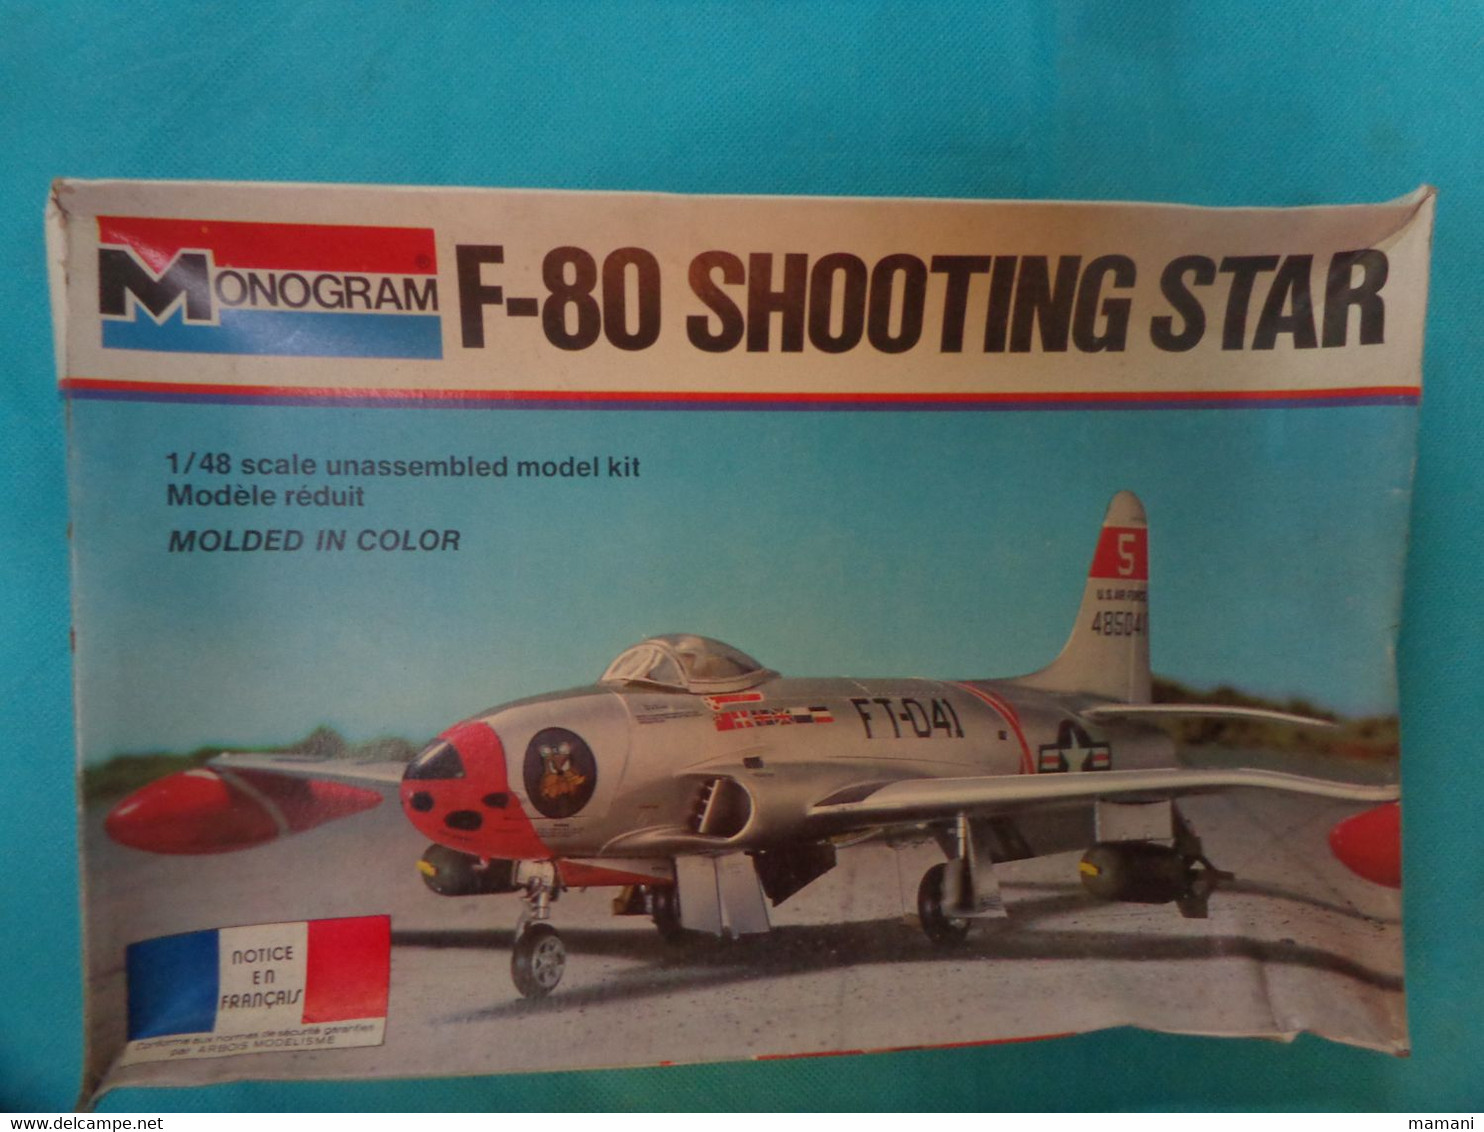 Maquette Plastique Monogram 1/48   Ref 5404 F-80 SH00TING STAR - Avions